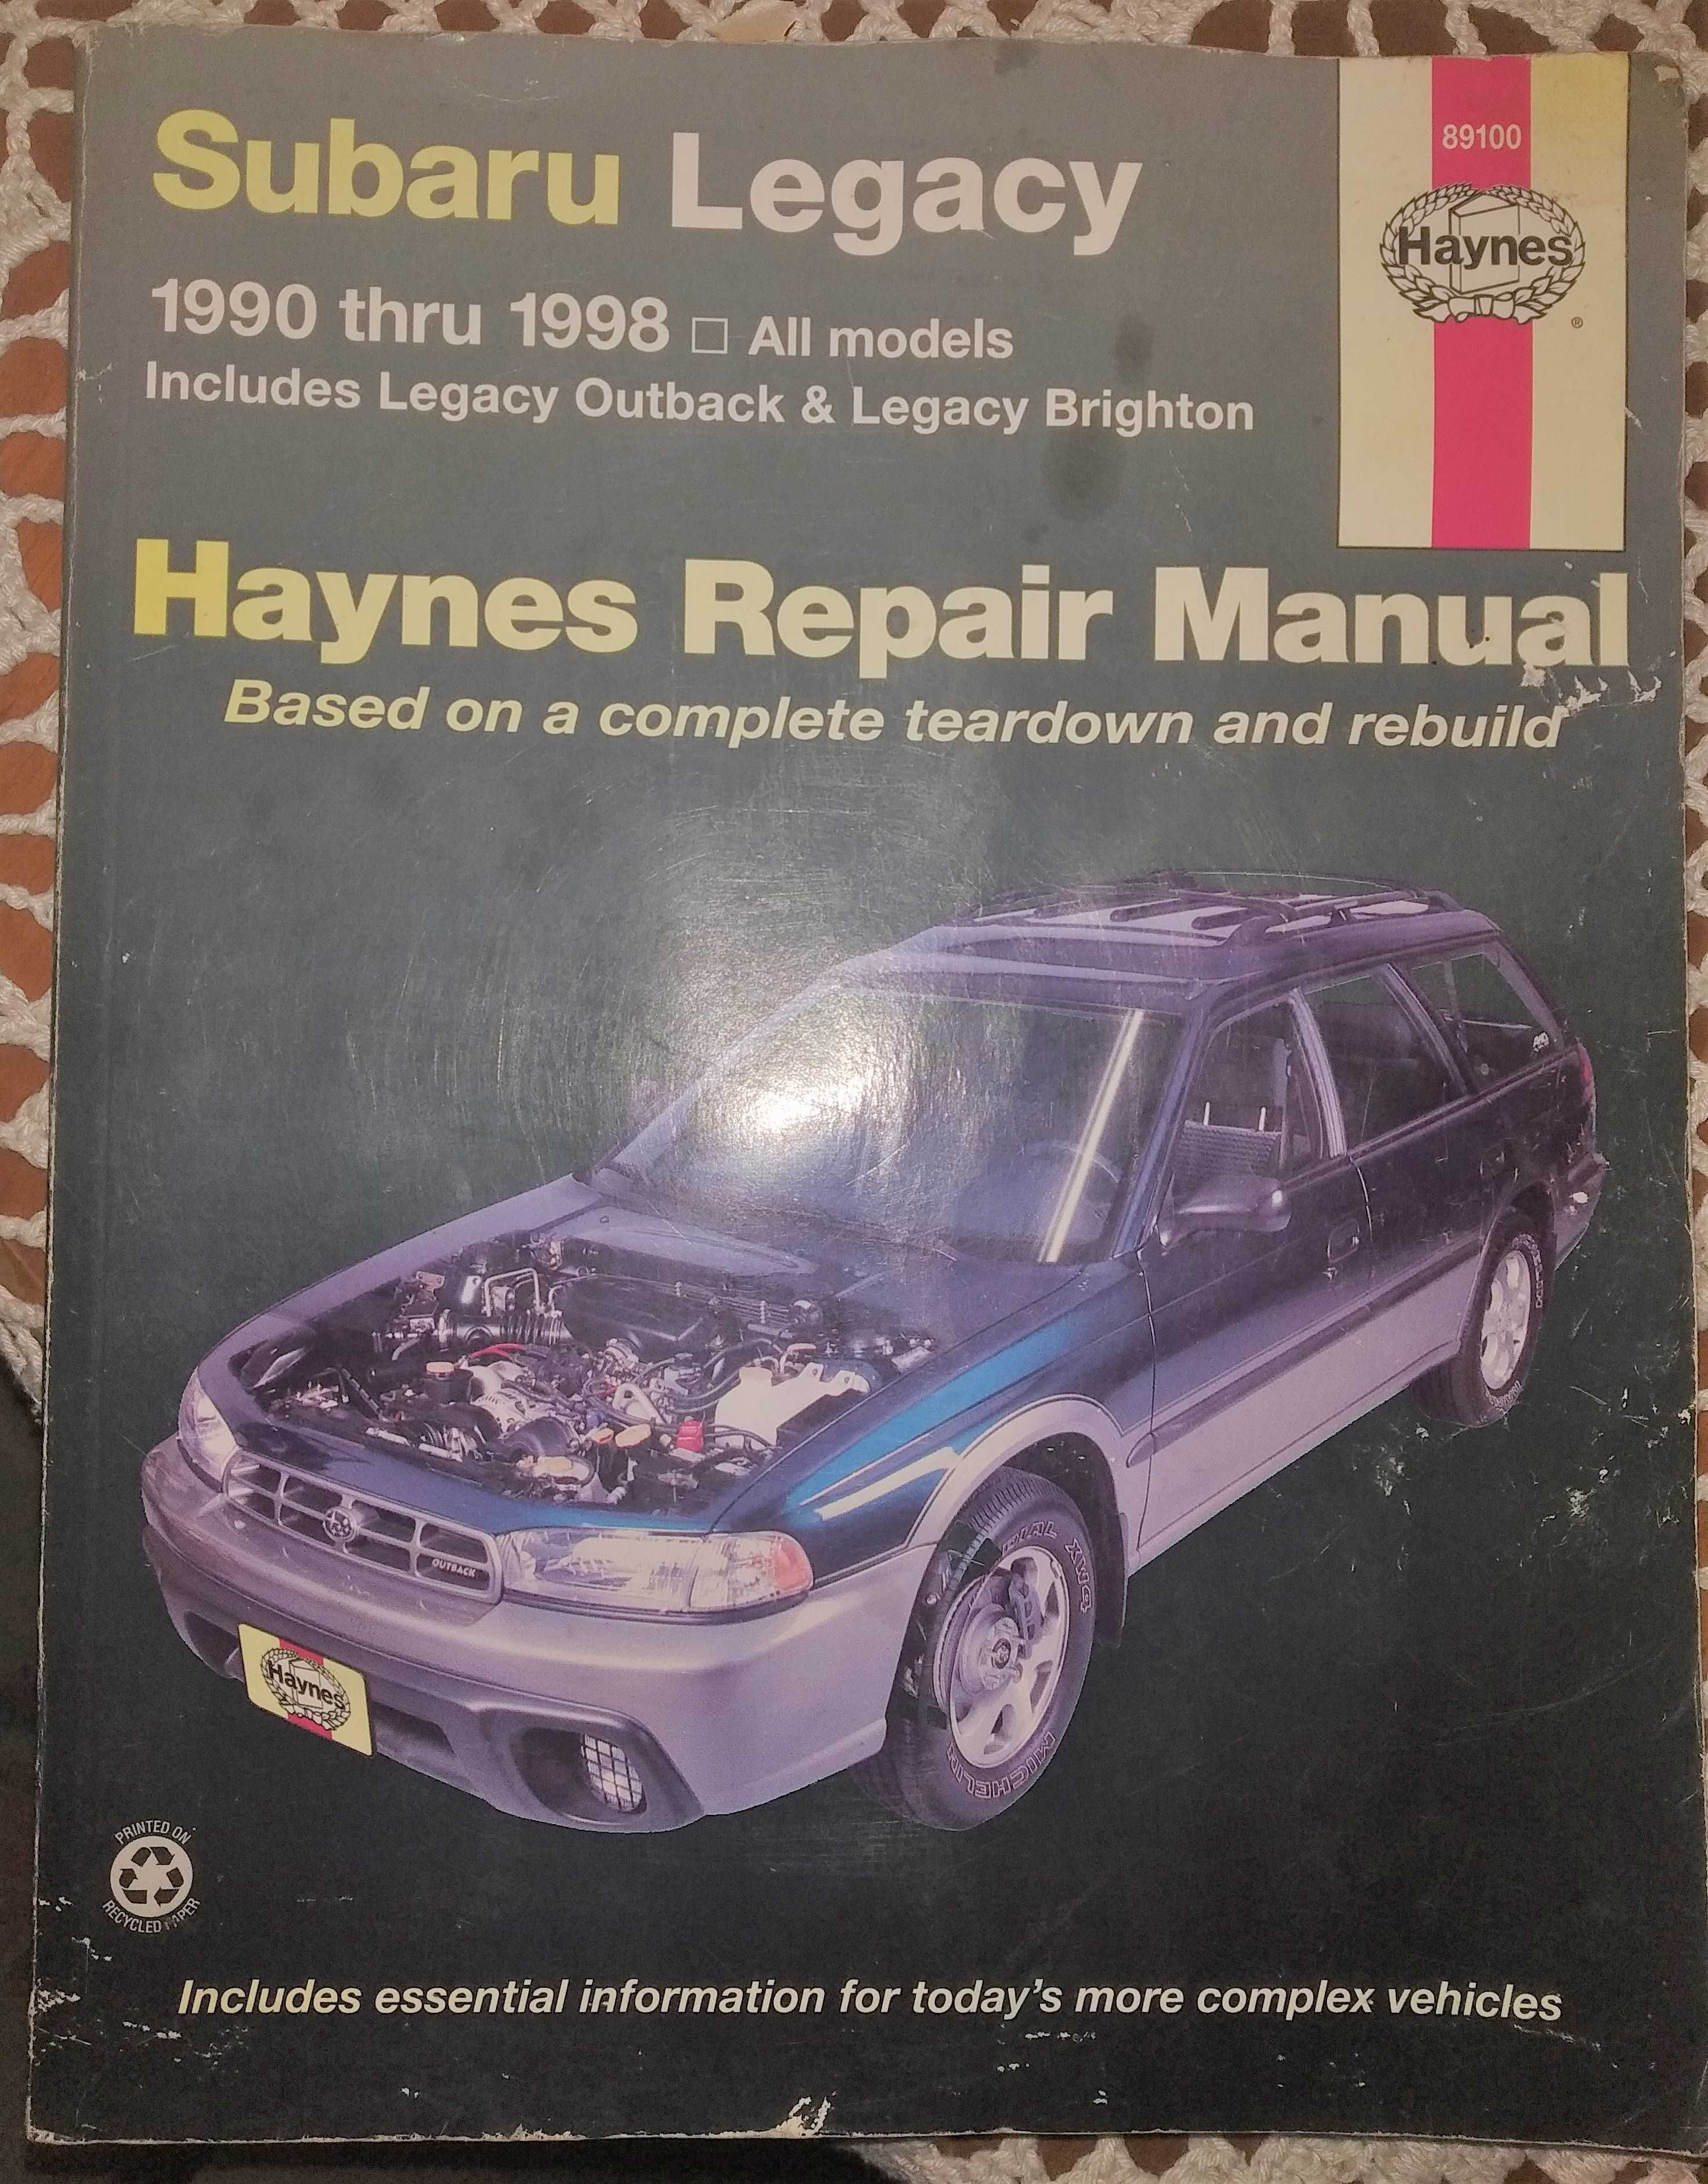 Subaru Legacy 1990 thru 1998 Haynes repair manual